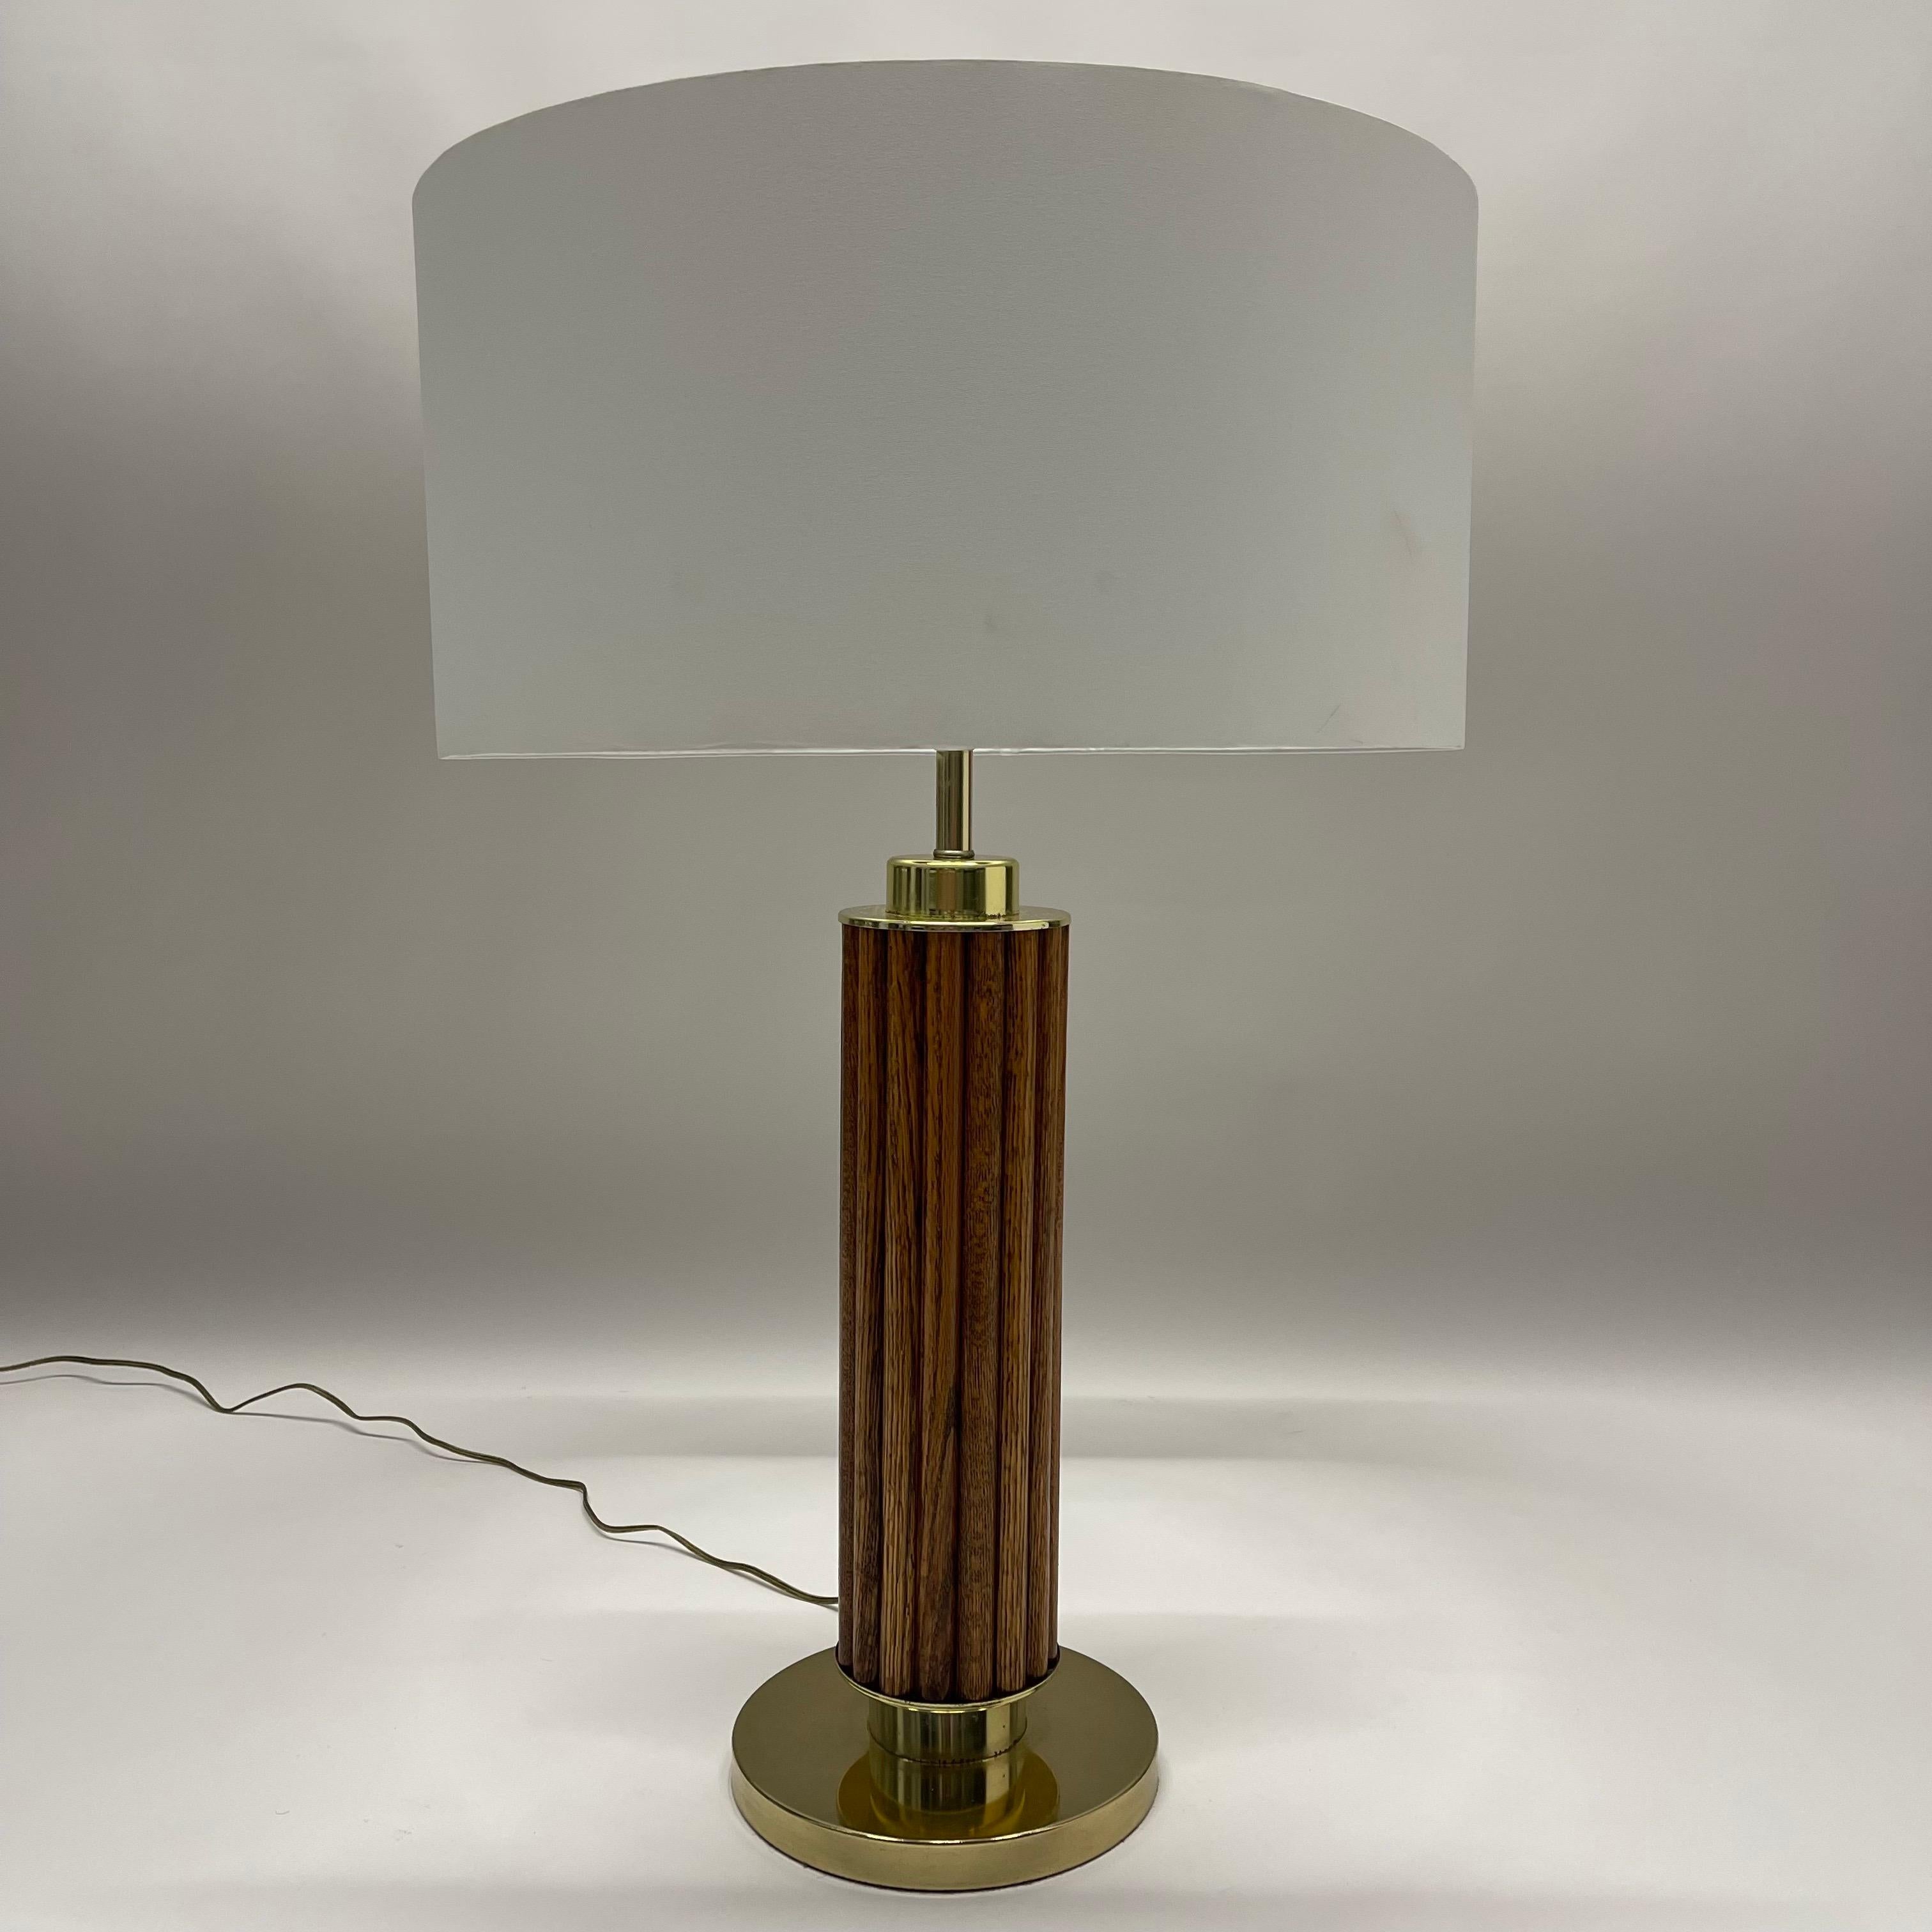 American Craft Tischlampe aus der Mitte des Jahrhunderts aus geriffeltem Eichenholz mit Messingbeschlägen, ca. 1970er Jahre.

24,5